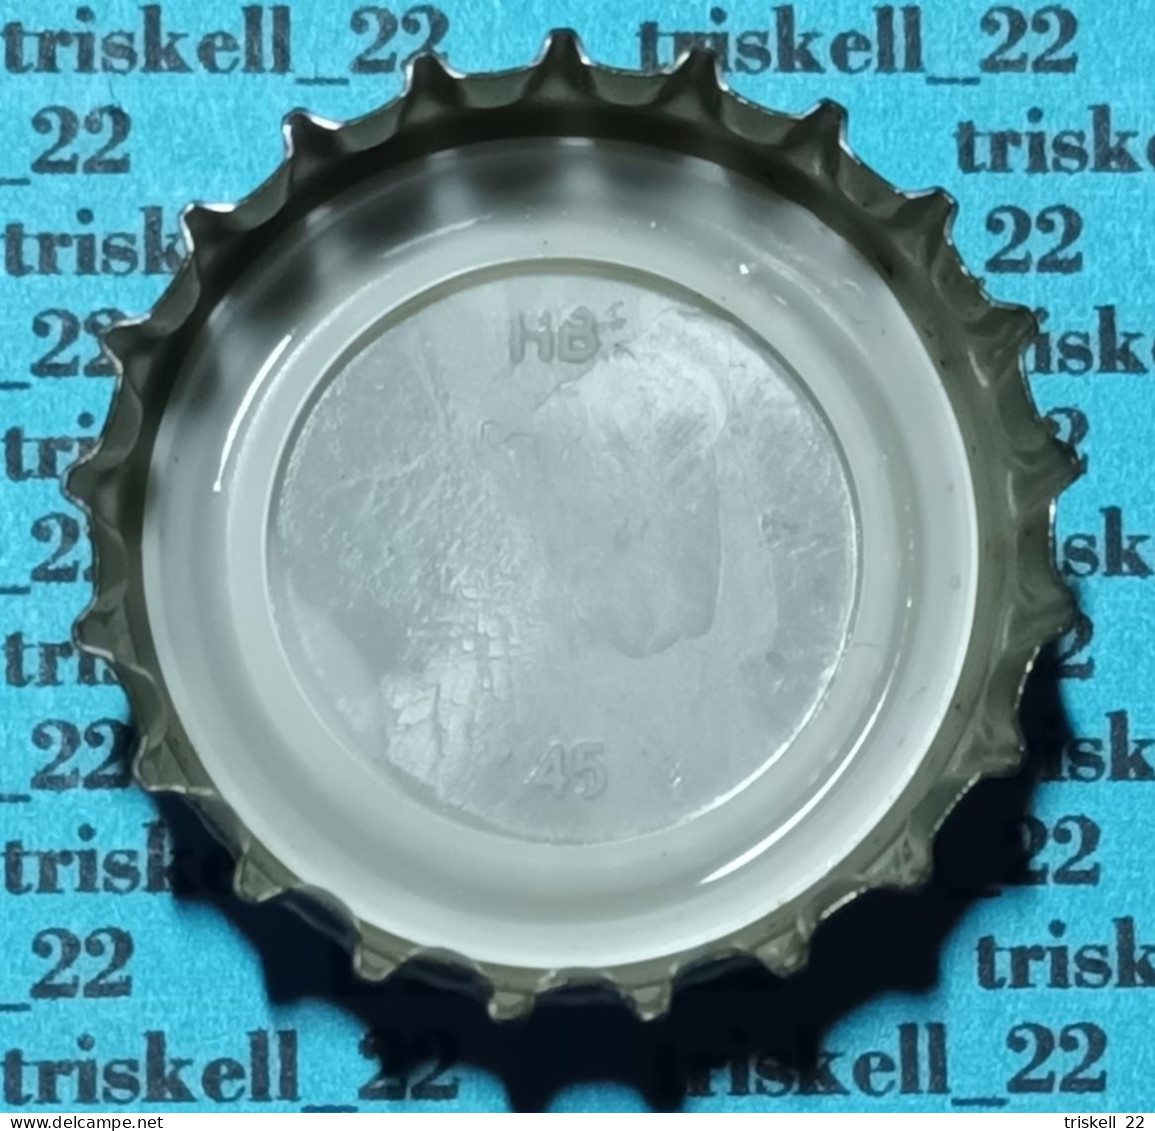 Gulden Draak Classic    Lot N° 40 - Beer